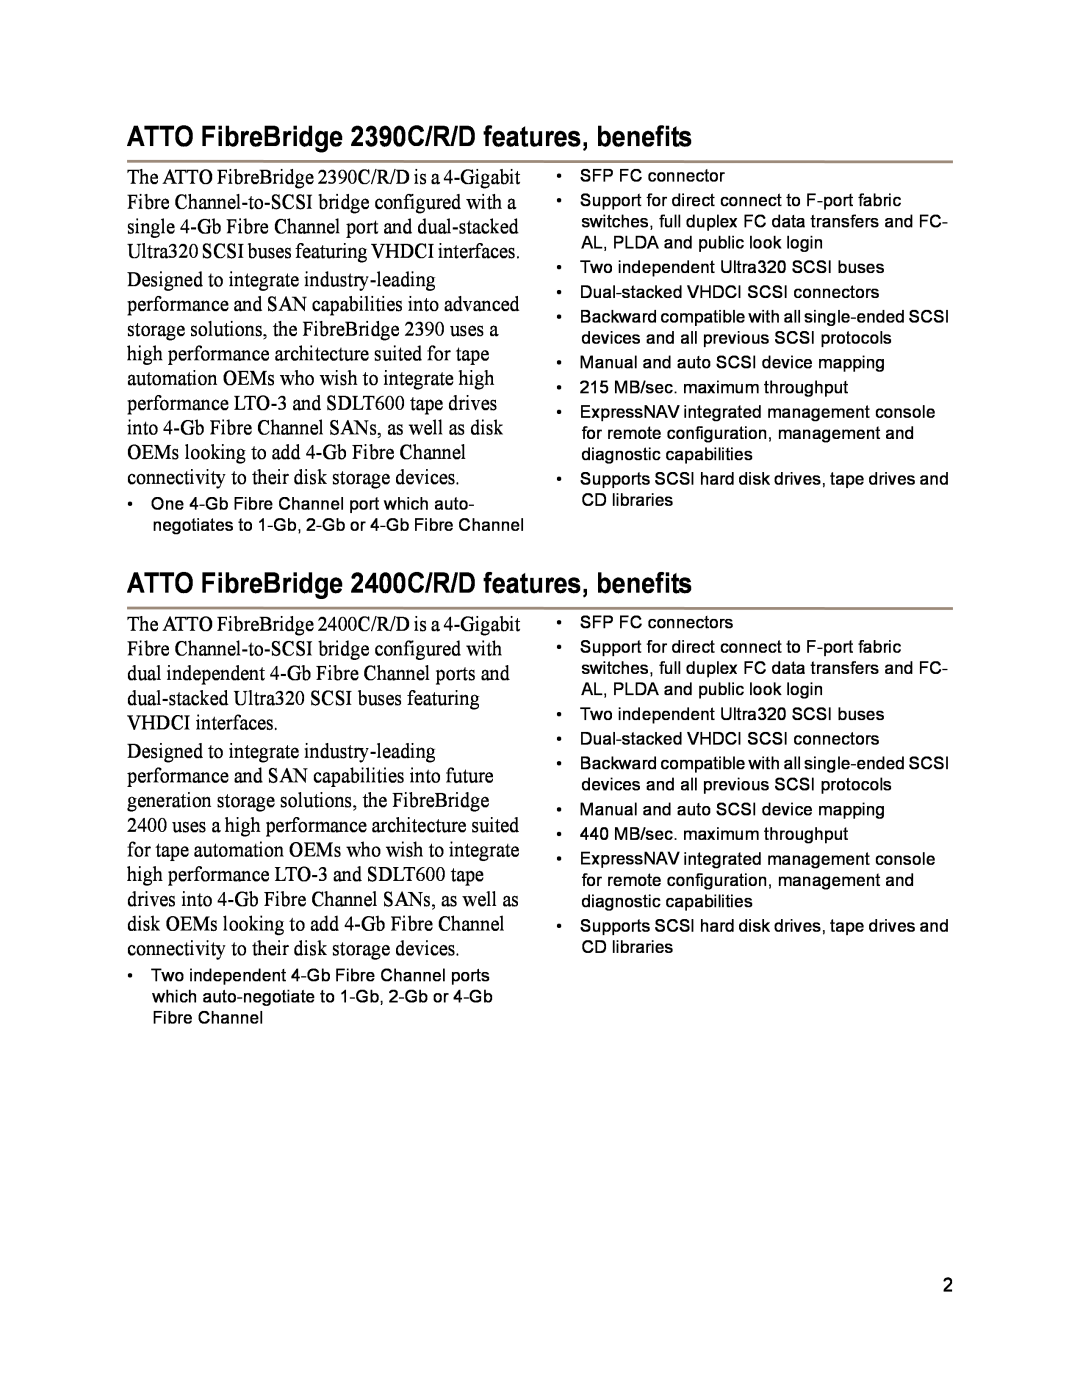 ATTO Technology 2370E ATTO FibreBridge 2390C/R/D features, benefits, ATTO FibreBridge 2400C/R/D features, benefits 